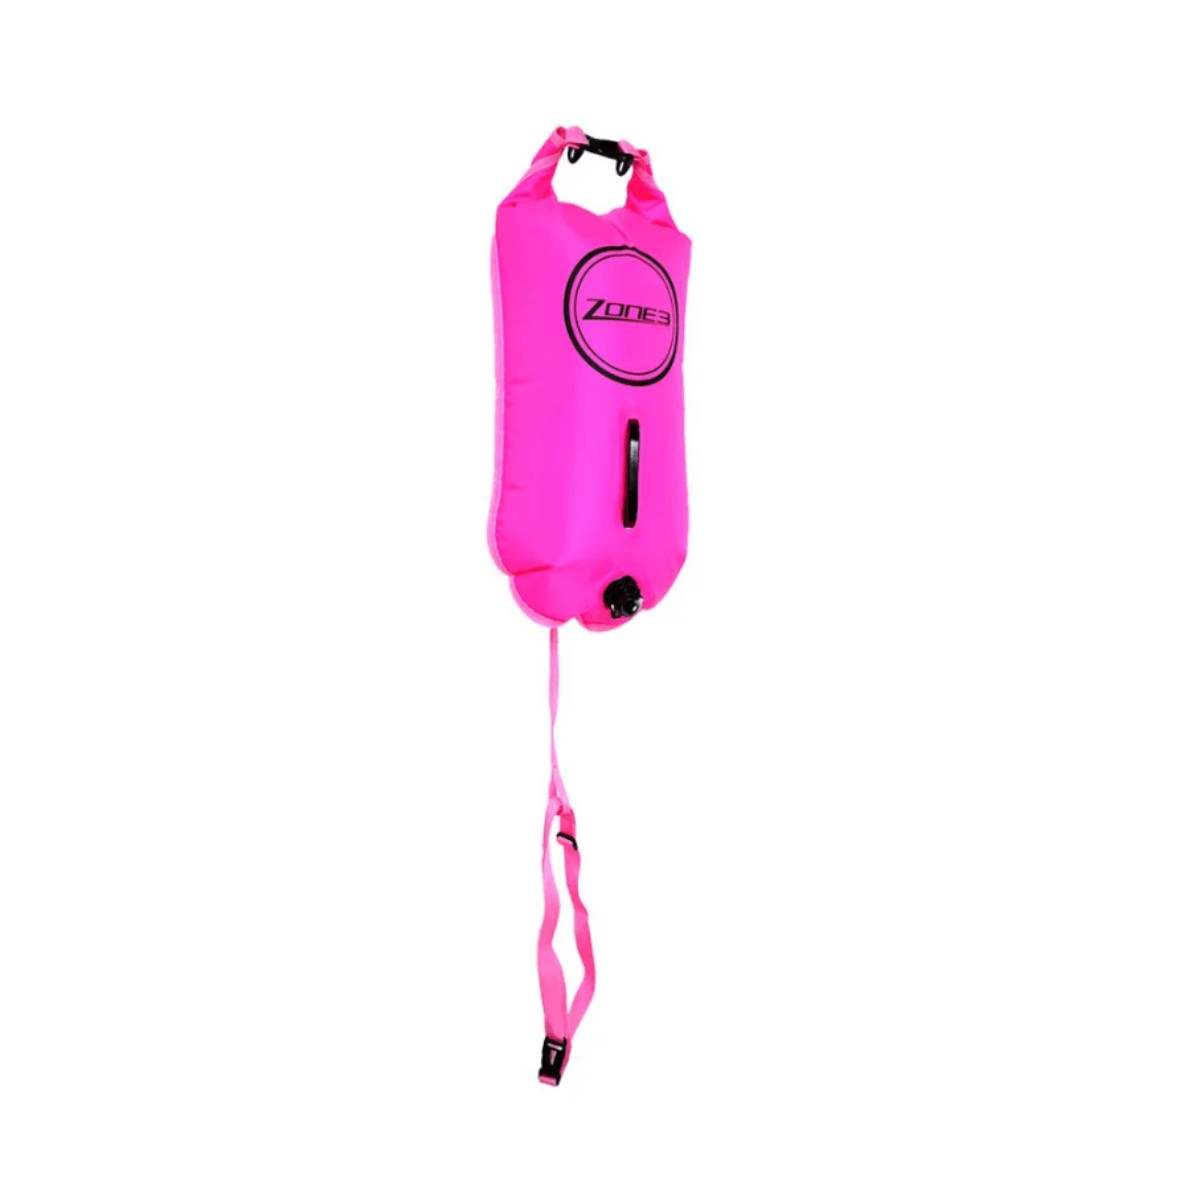 IDEAL günstig Kaufen-Zone3 Schwimmen Boje Neon Dry Bag Rosa. Zone3 Schwimmen Boje Neon Dry Bag Rosa <![CDATA[Hauptmerkmale Boje Zone3 Schwimmen Neon Dry Bag Pink Diese farbenfrohe aufblasbare Boje ist ideal, um Ihre Ausrüstung beim Schwimmen aufzubewahren und beim Schwimmen 